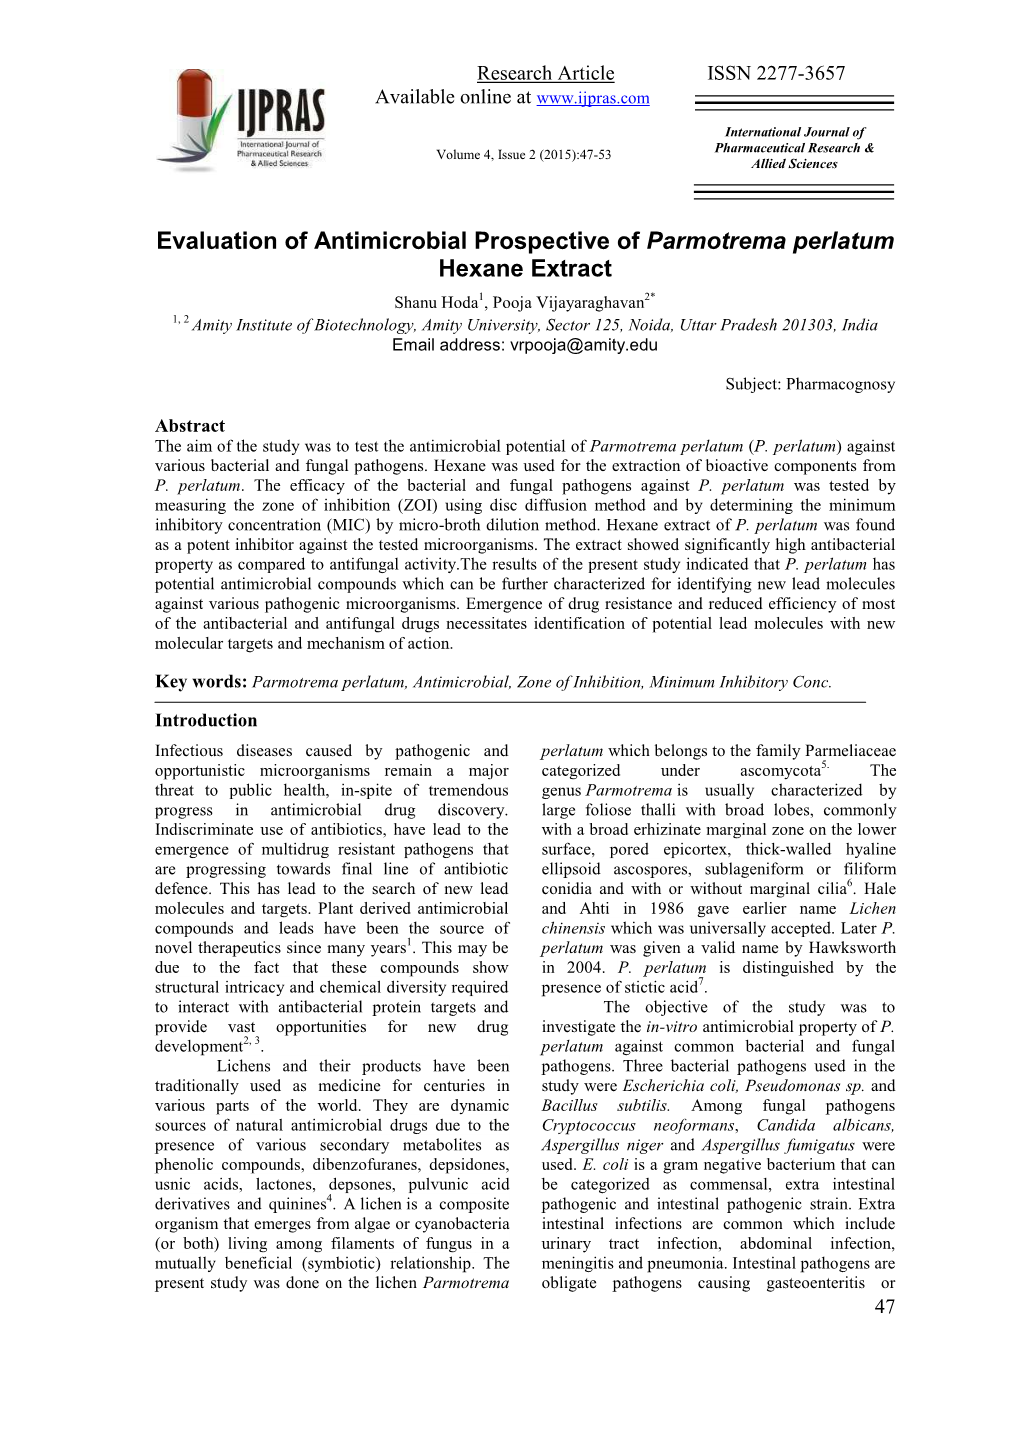 Antimicrobial Prospective of Parmotrema Perlatum Hexane Extract